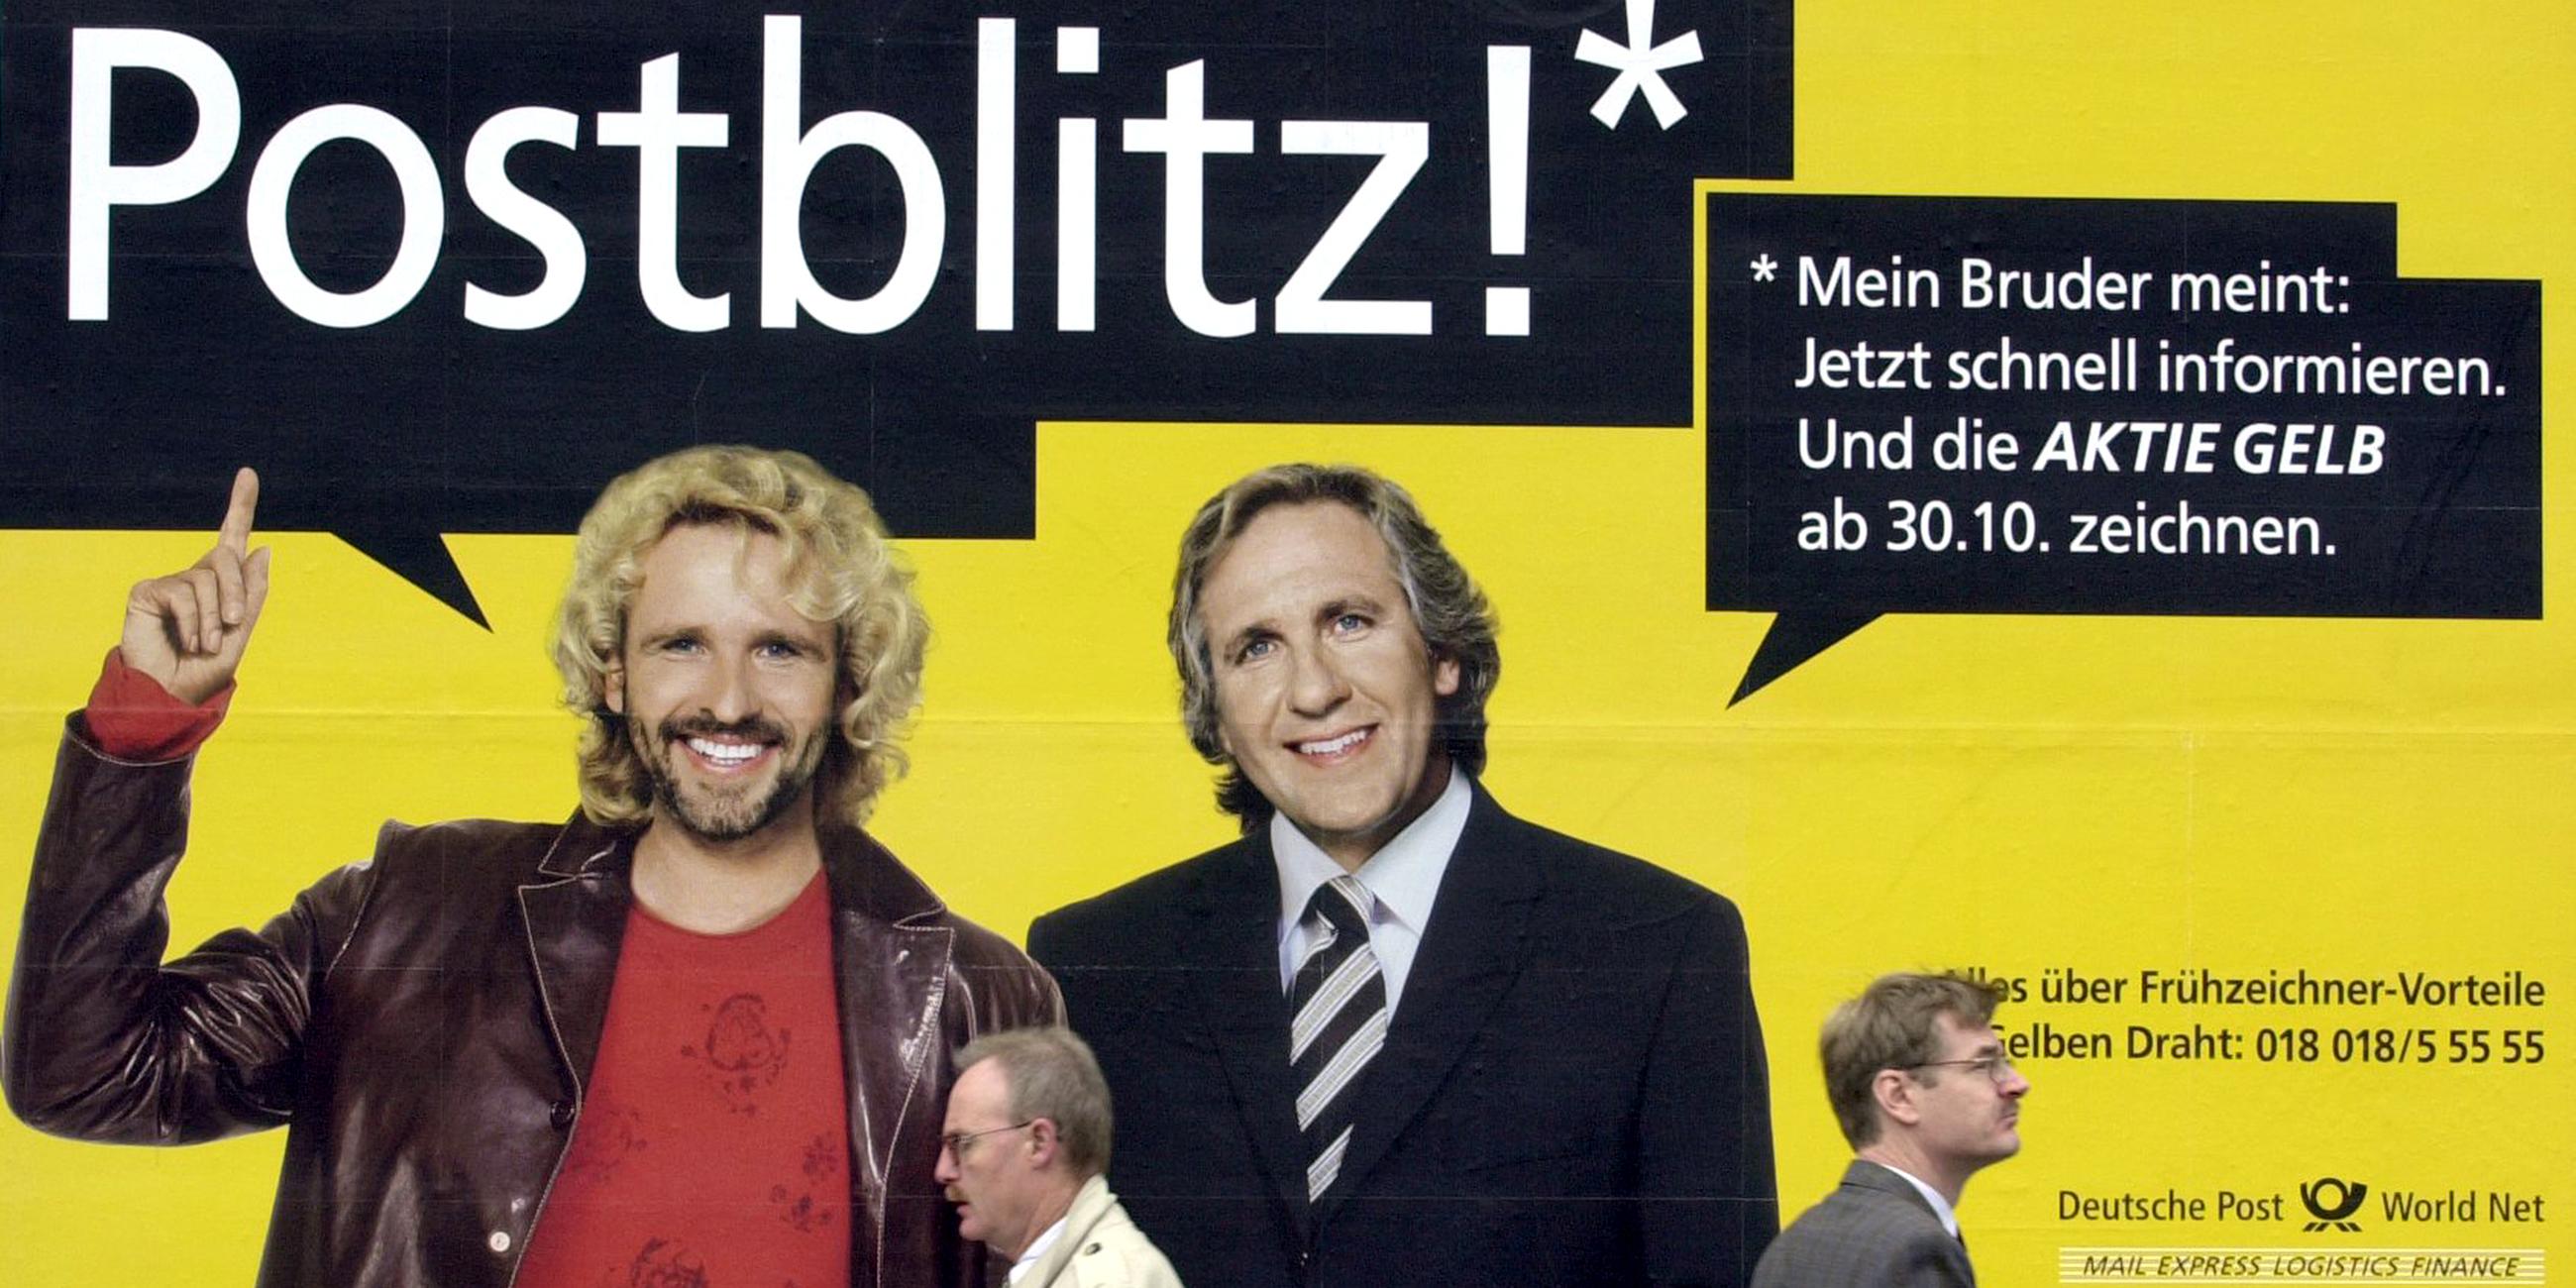 Thomas Gottschalk auf einem Werbeplakat mit seinem Bruder Christoph.